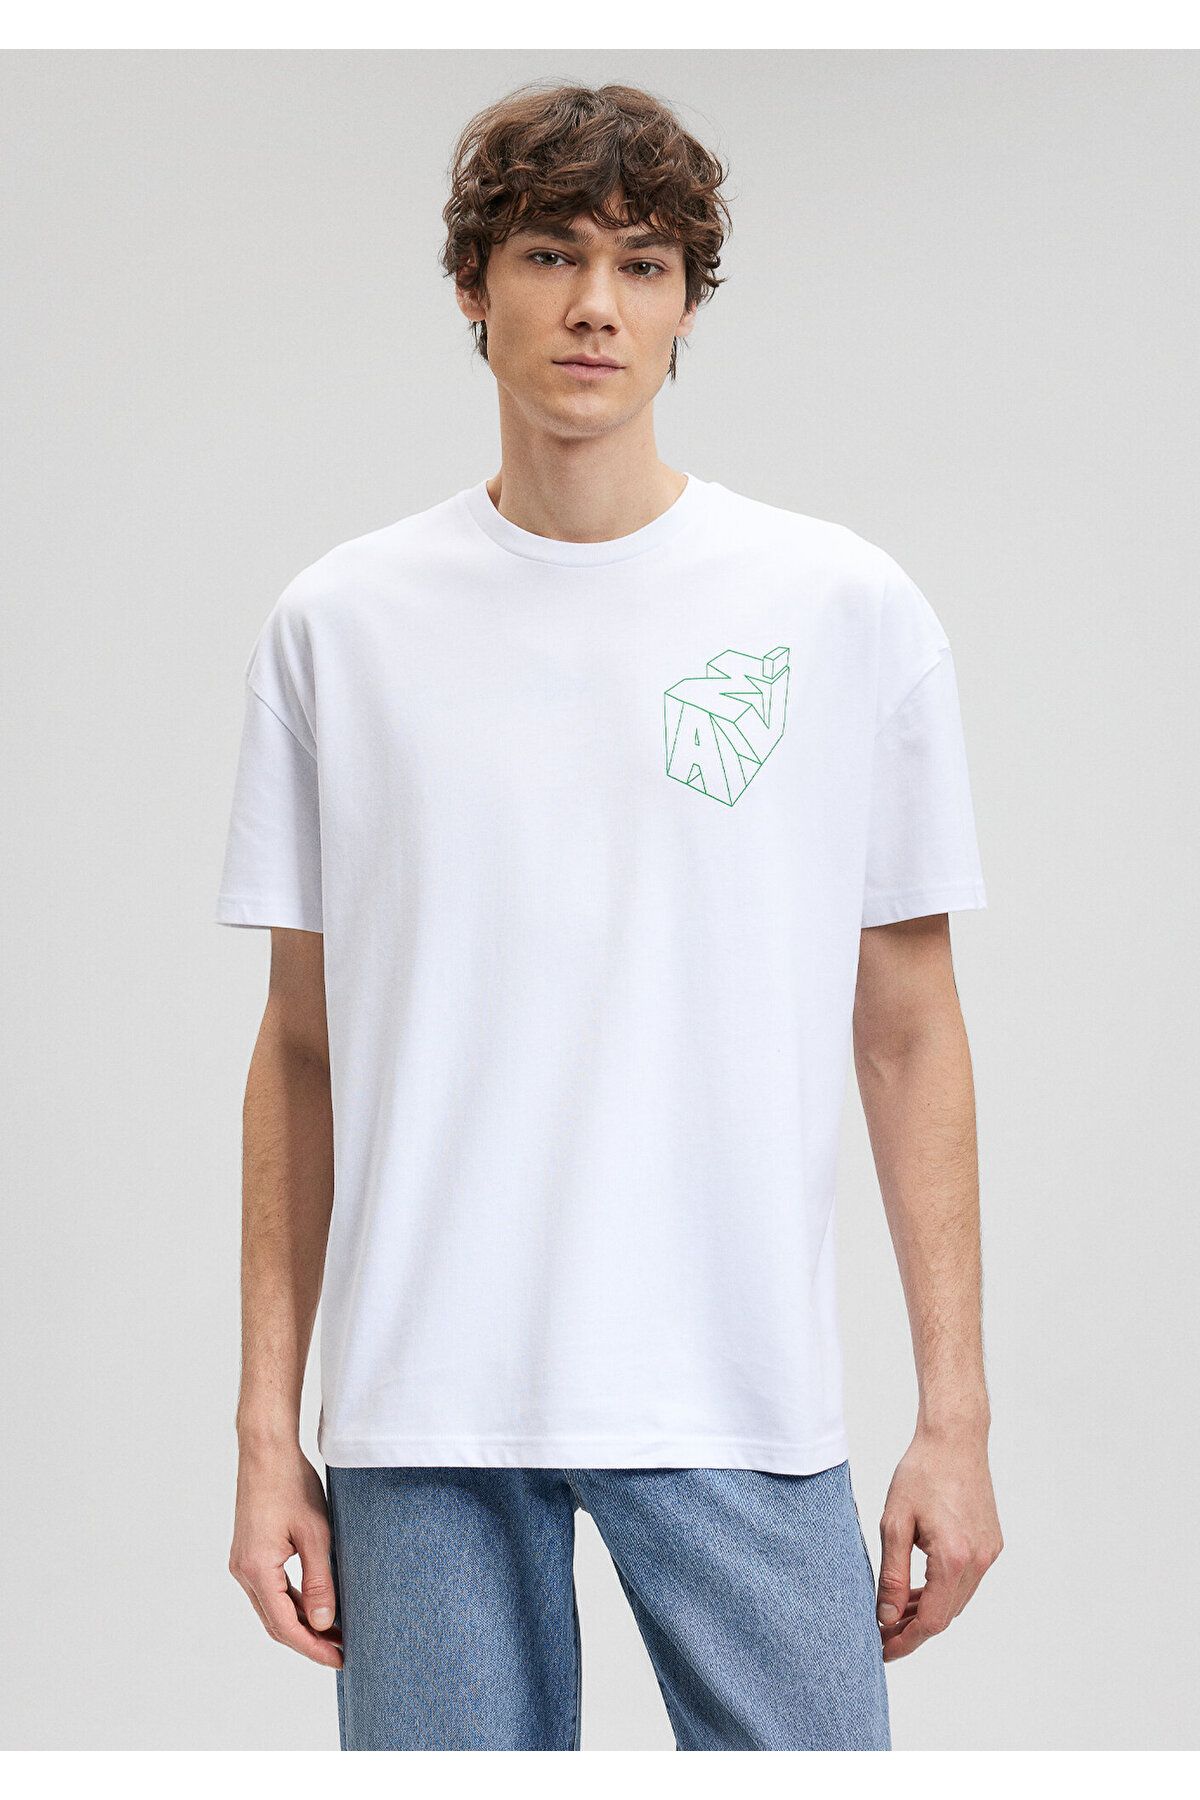 Mavi آرم چاپ شده تی شرت سفید بزرگ / بخش گسترده ای 0610320-602